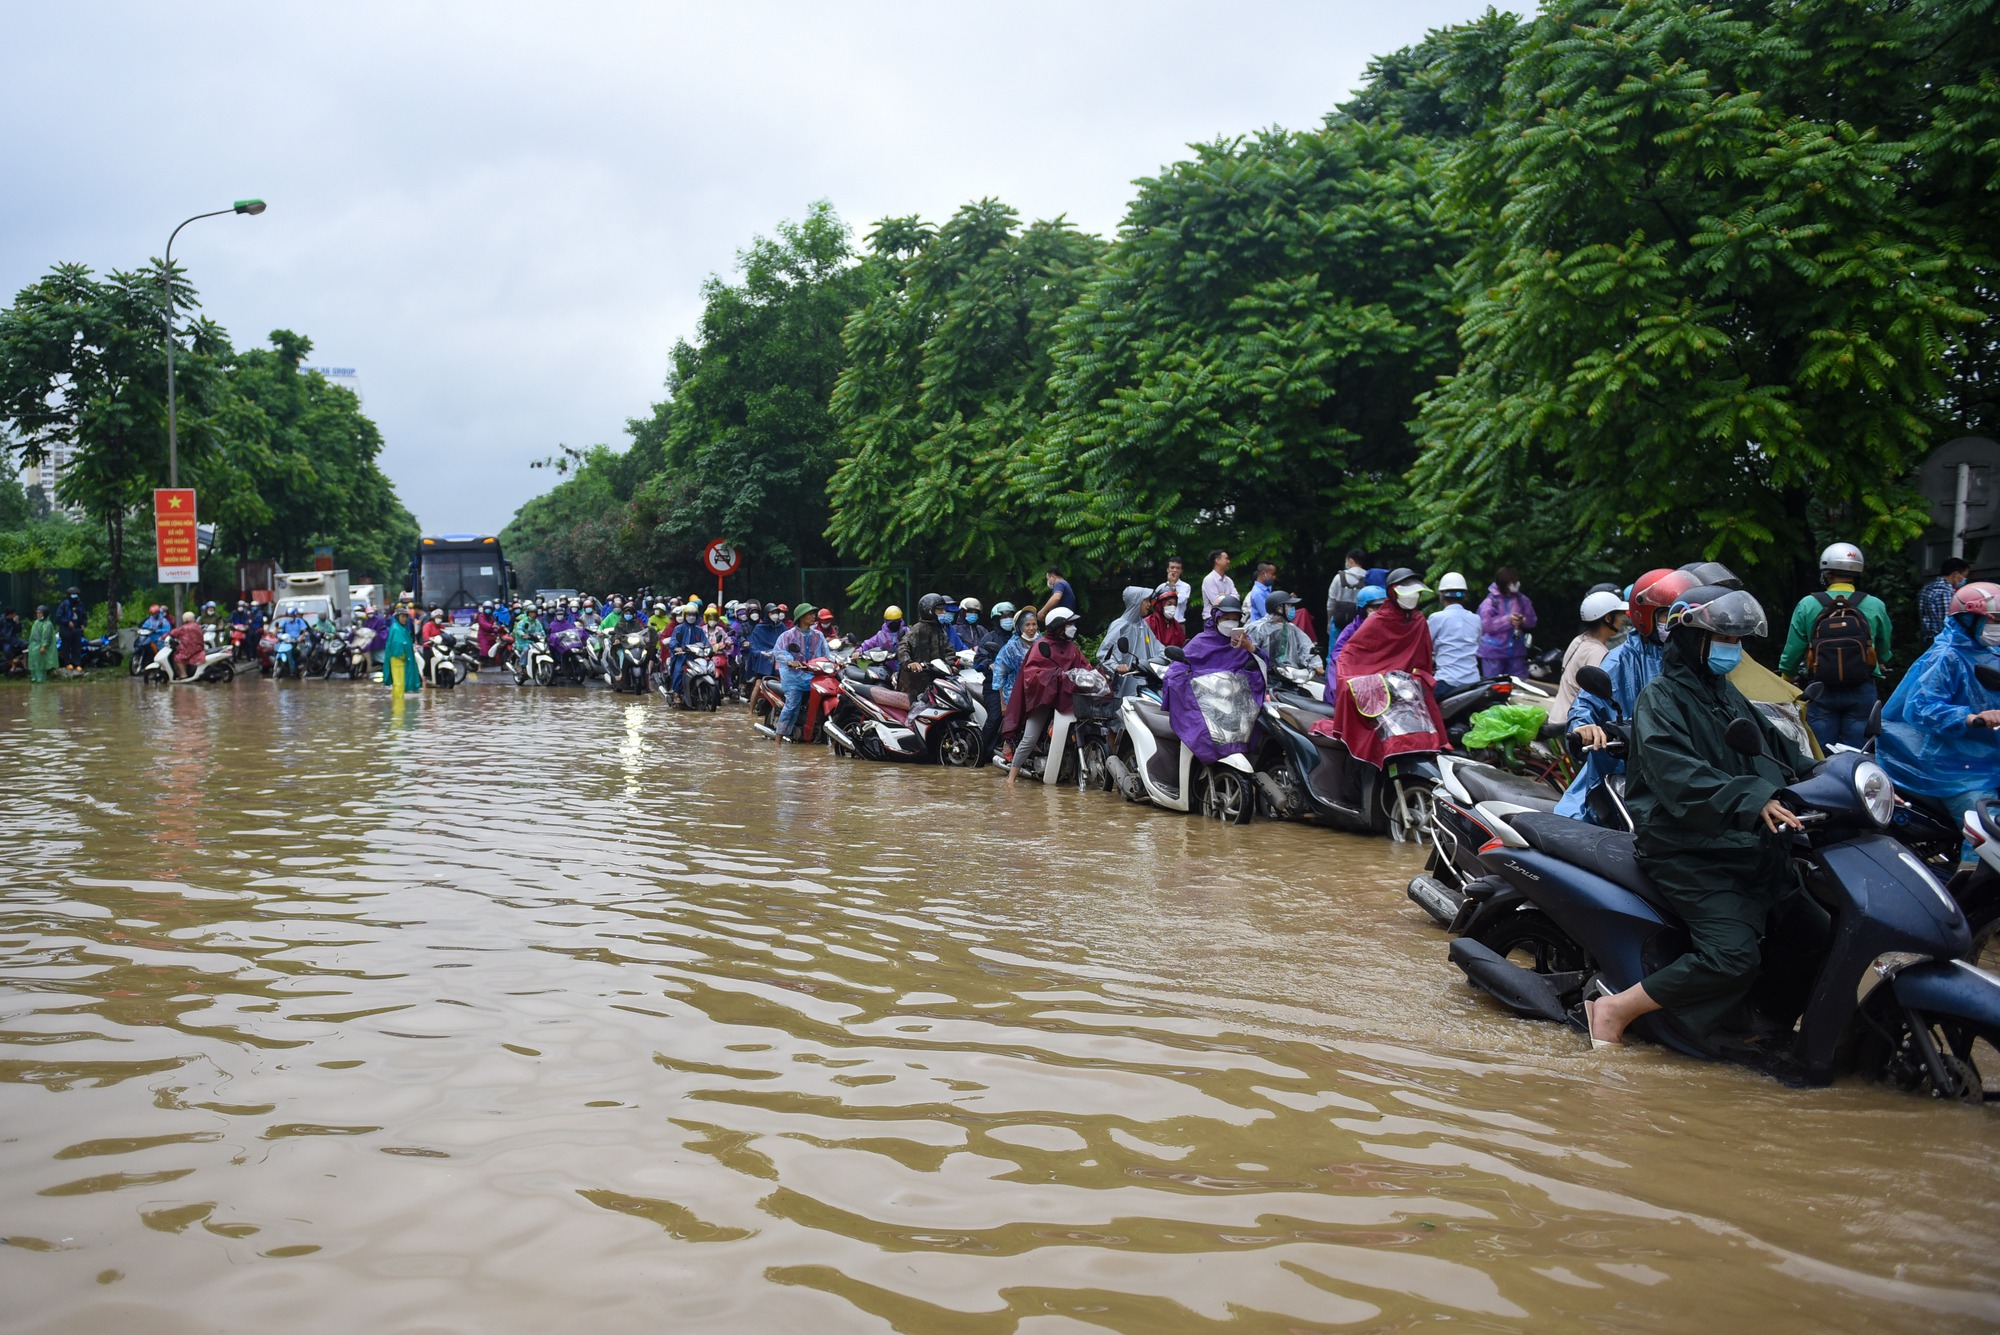 Đường gom đại lộ Thăng Long chìm trong biển nước sau trận mưa lớn - Ảnh 1.